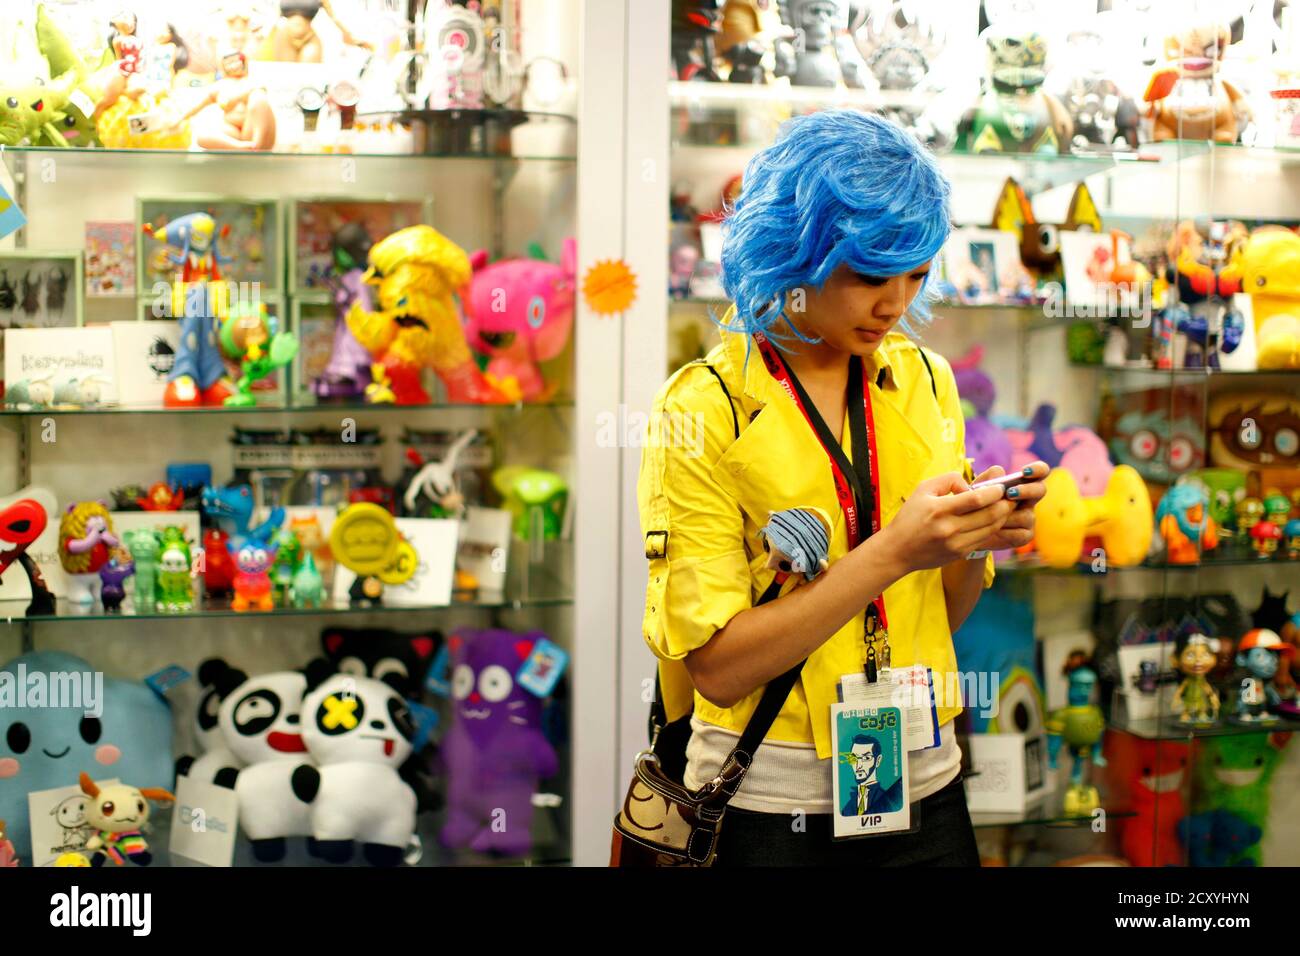 Ein Teilnehmer in Kostümentexte auf einem Handy gekleidet in einem Spielzeugladen auf der Comic Con Convention Floor während der Pop-Kultur-Veranstaltung in San Diego, Kalifornien 22. Juli 2011. REUTERS/Mike Blake (VEREINIGTE STAATEN - Tags: GESELLSCHAFT DER UNTERHALTUNG) Stockfoto